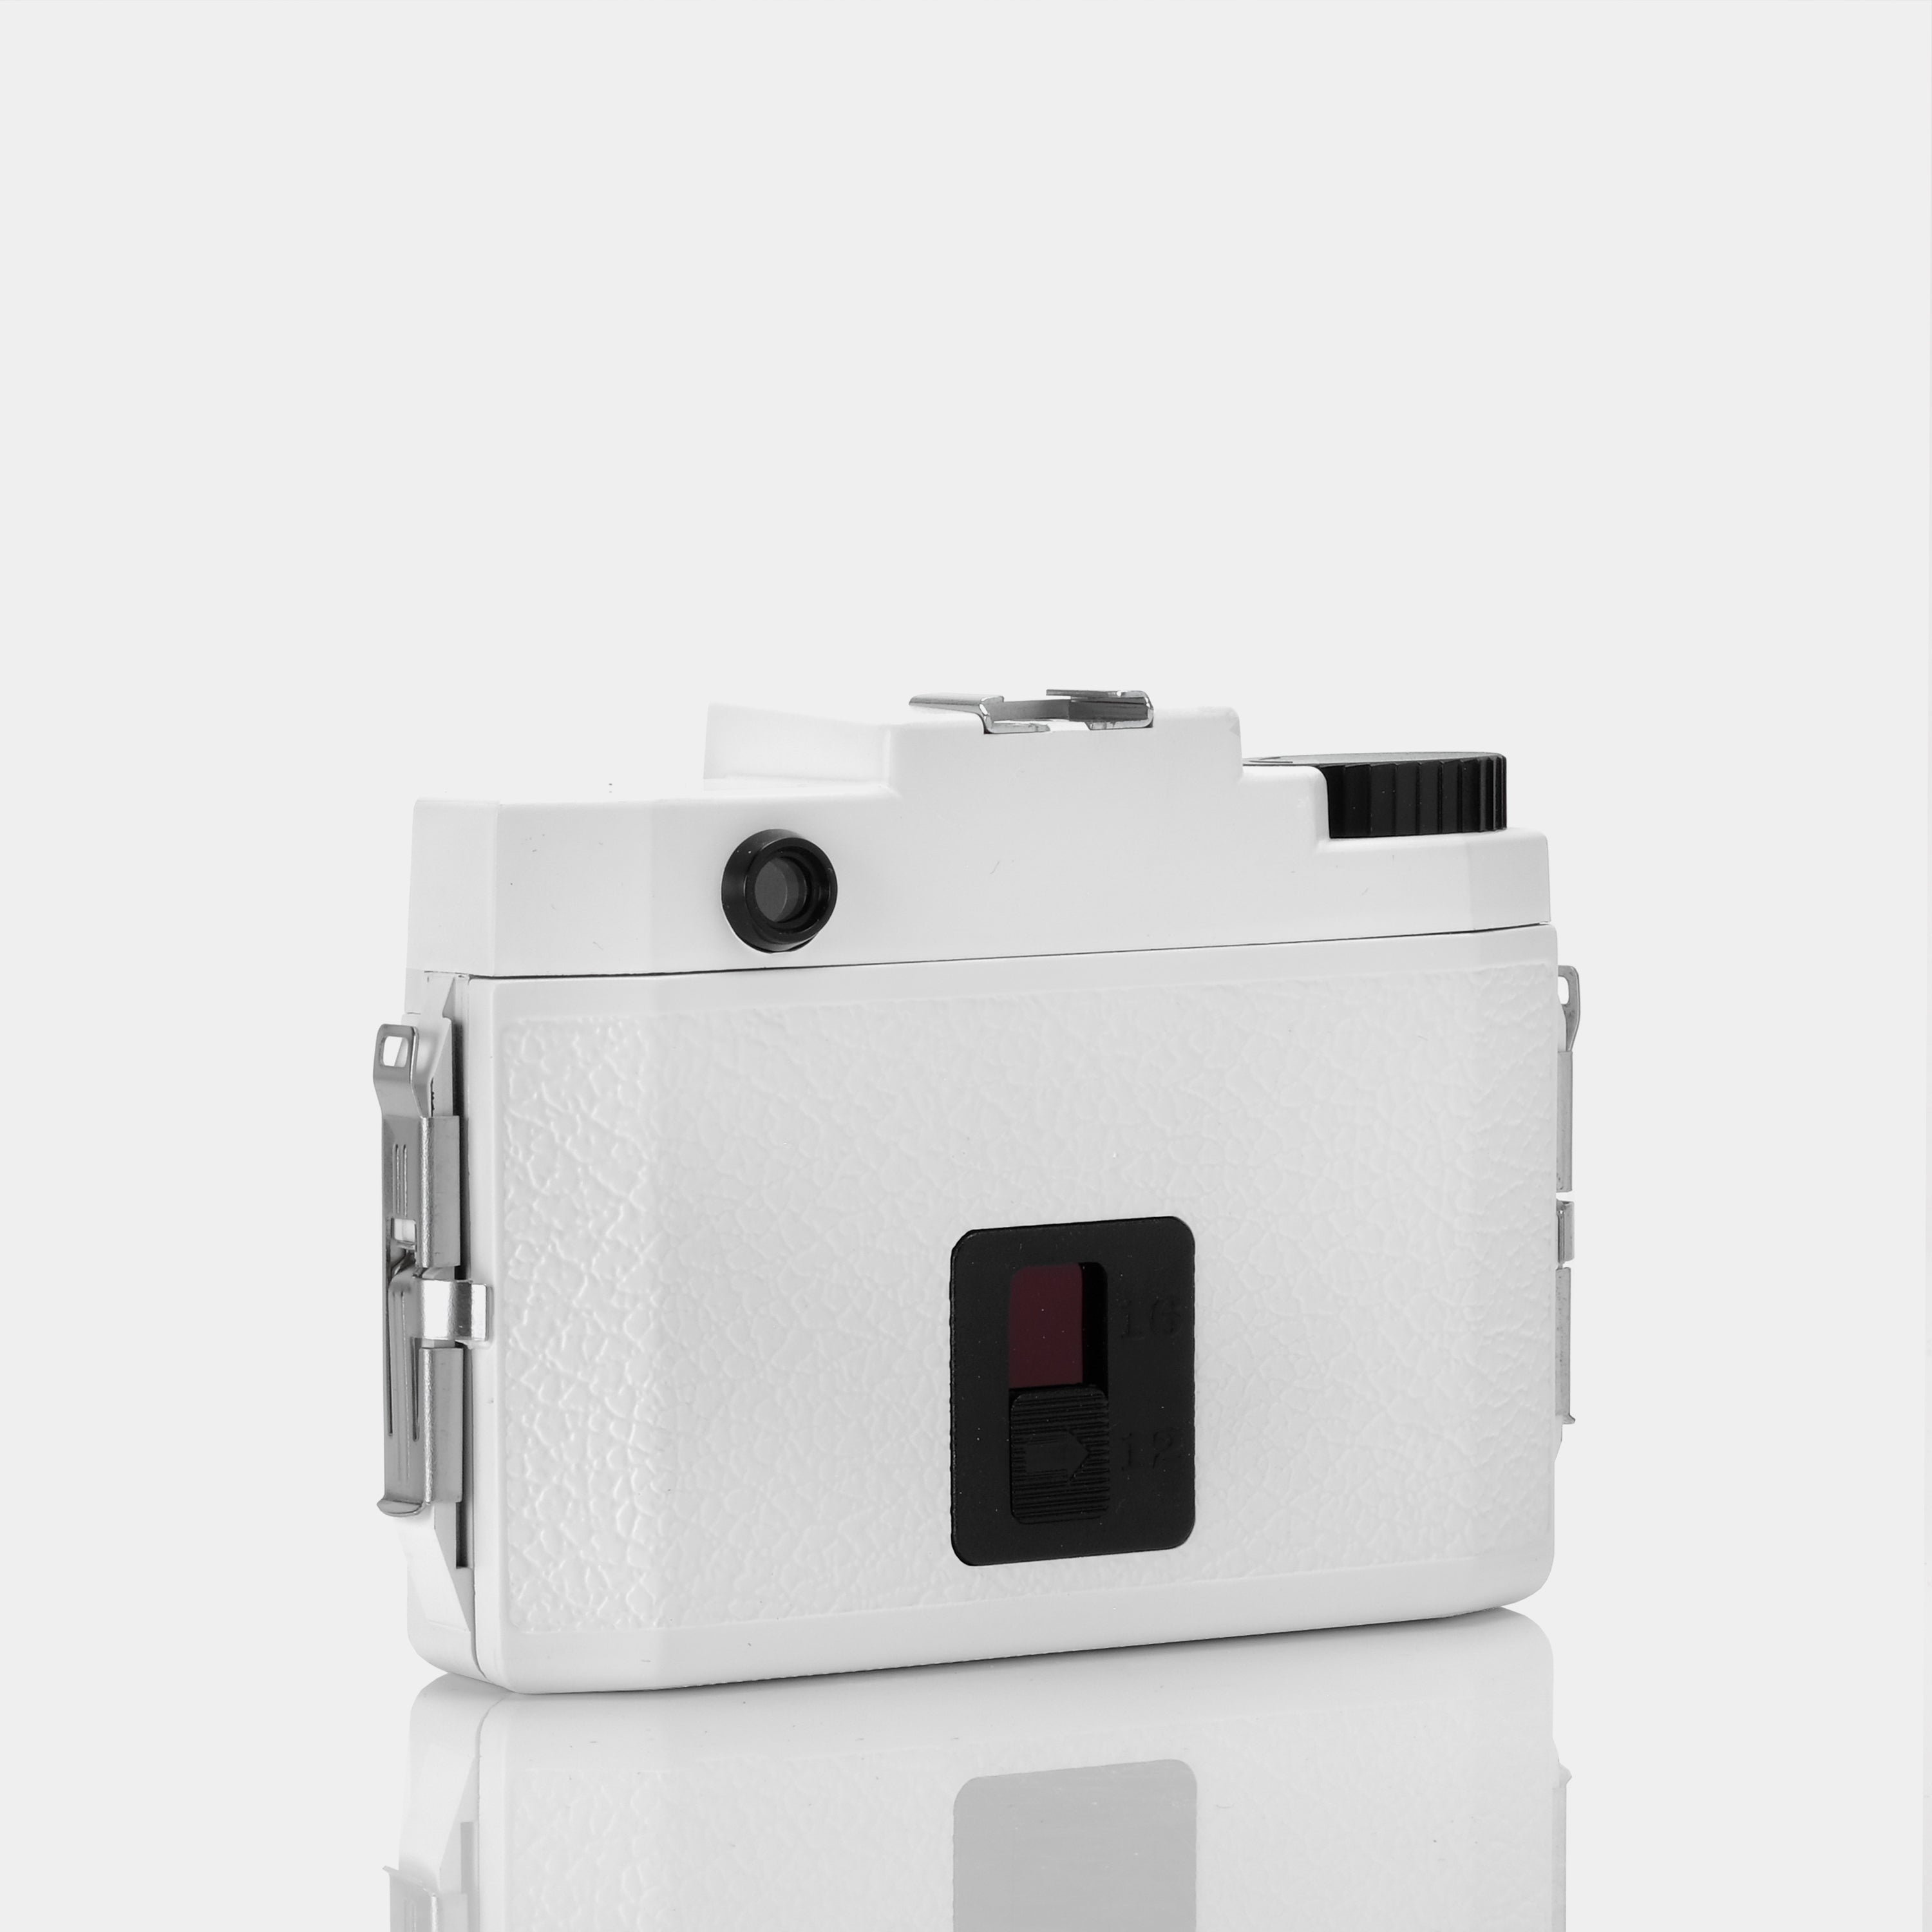 Holga 120N White 120 Film Camera